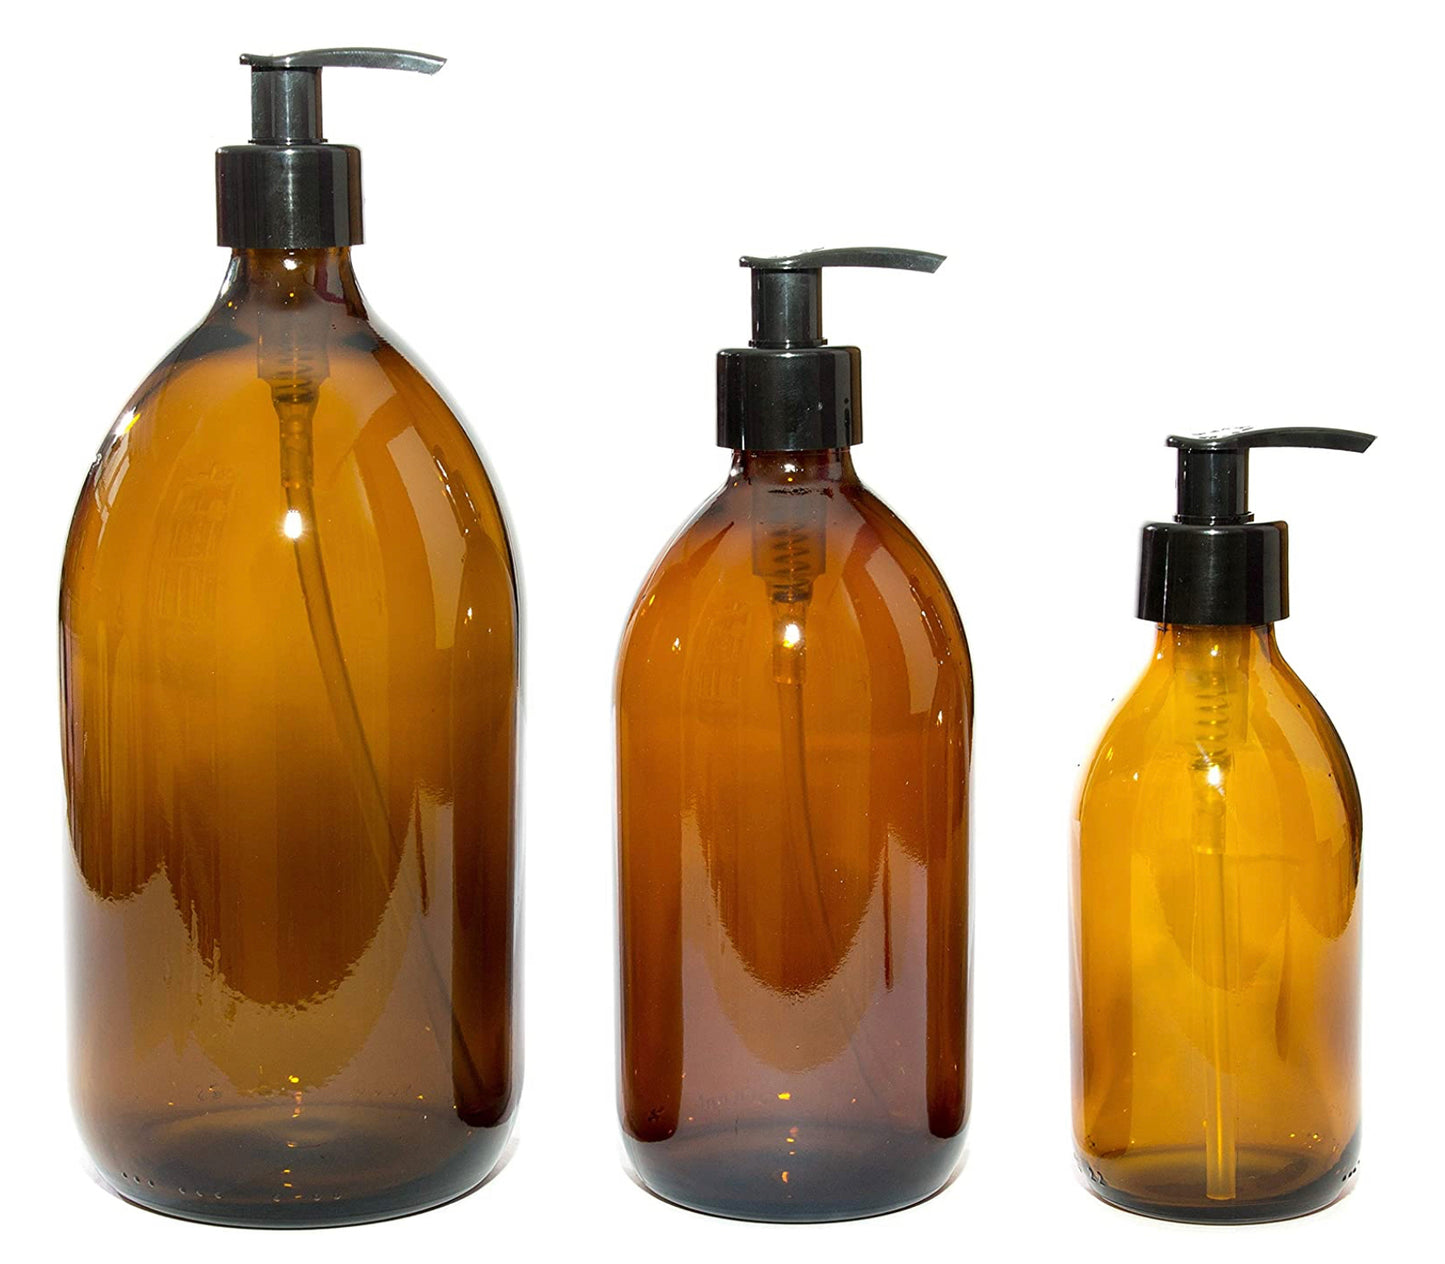 Amber plastic bottles